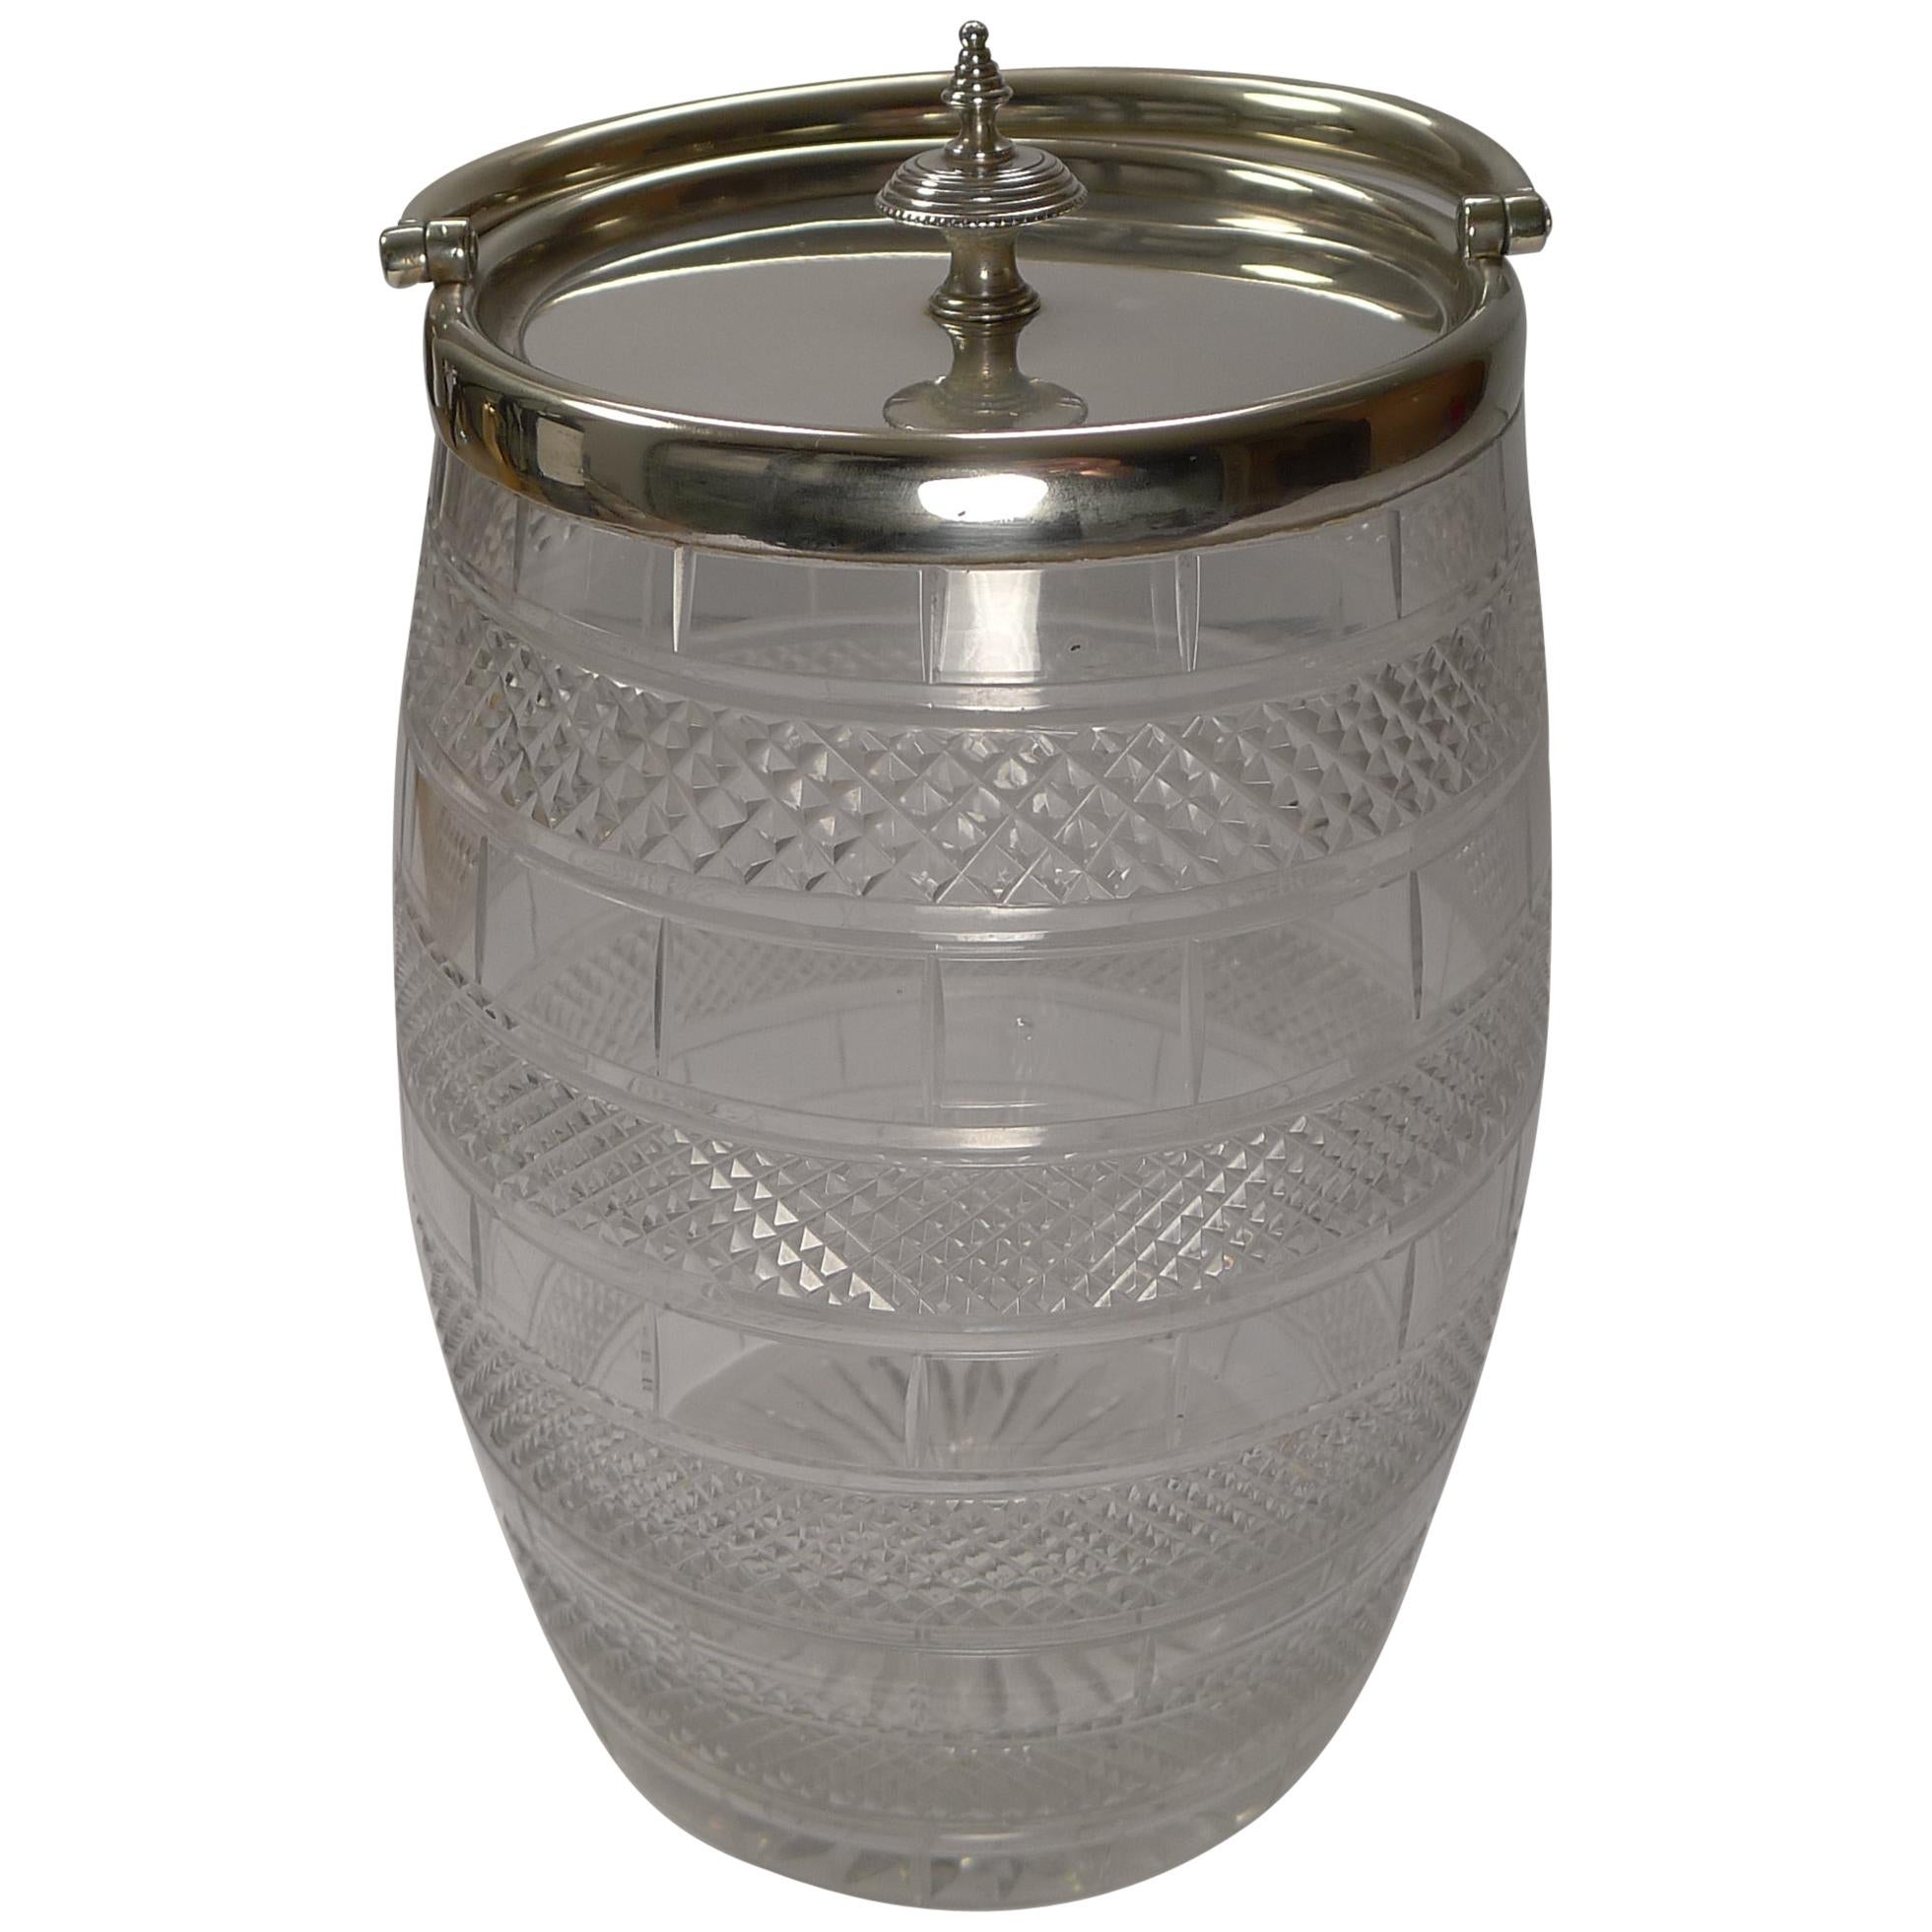 Antike englische Biskuitdose / Barrel aus geschliffenem Glas und versilberter Qualität, um 1860